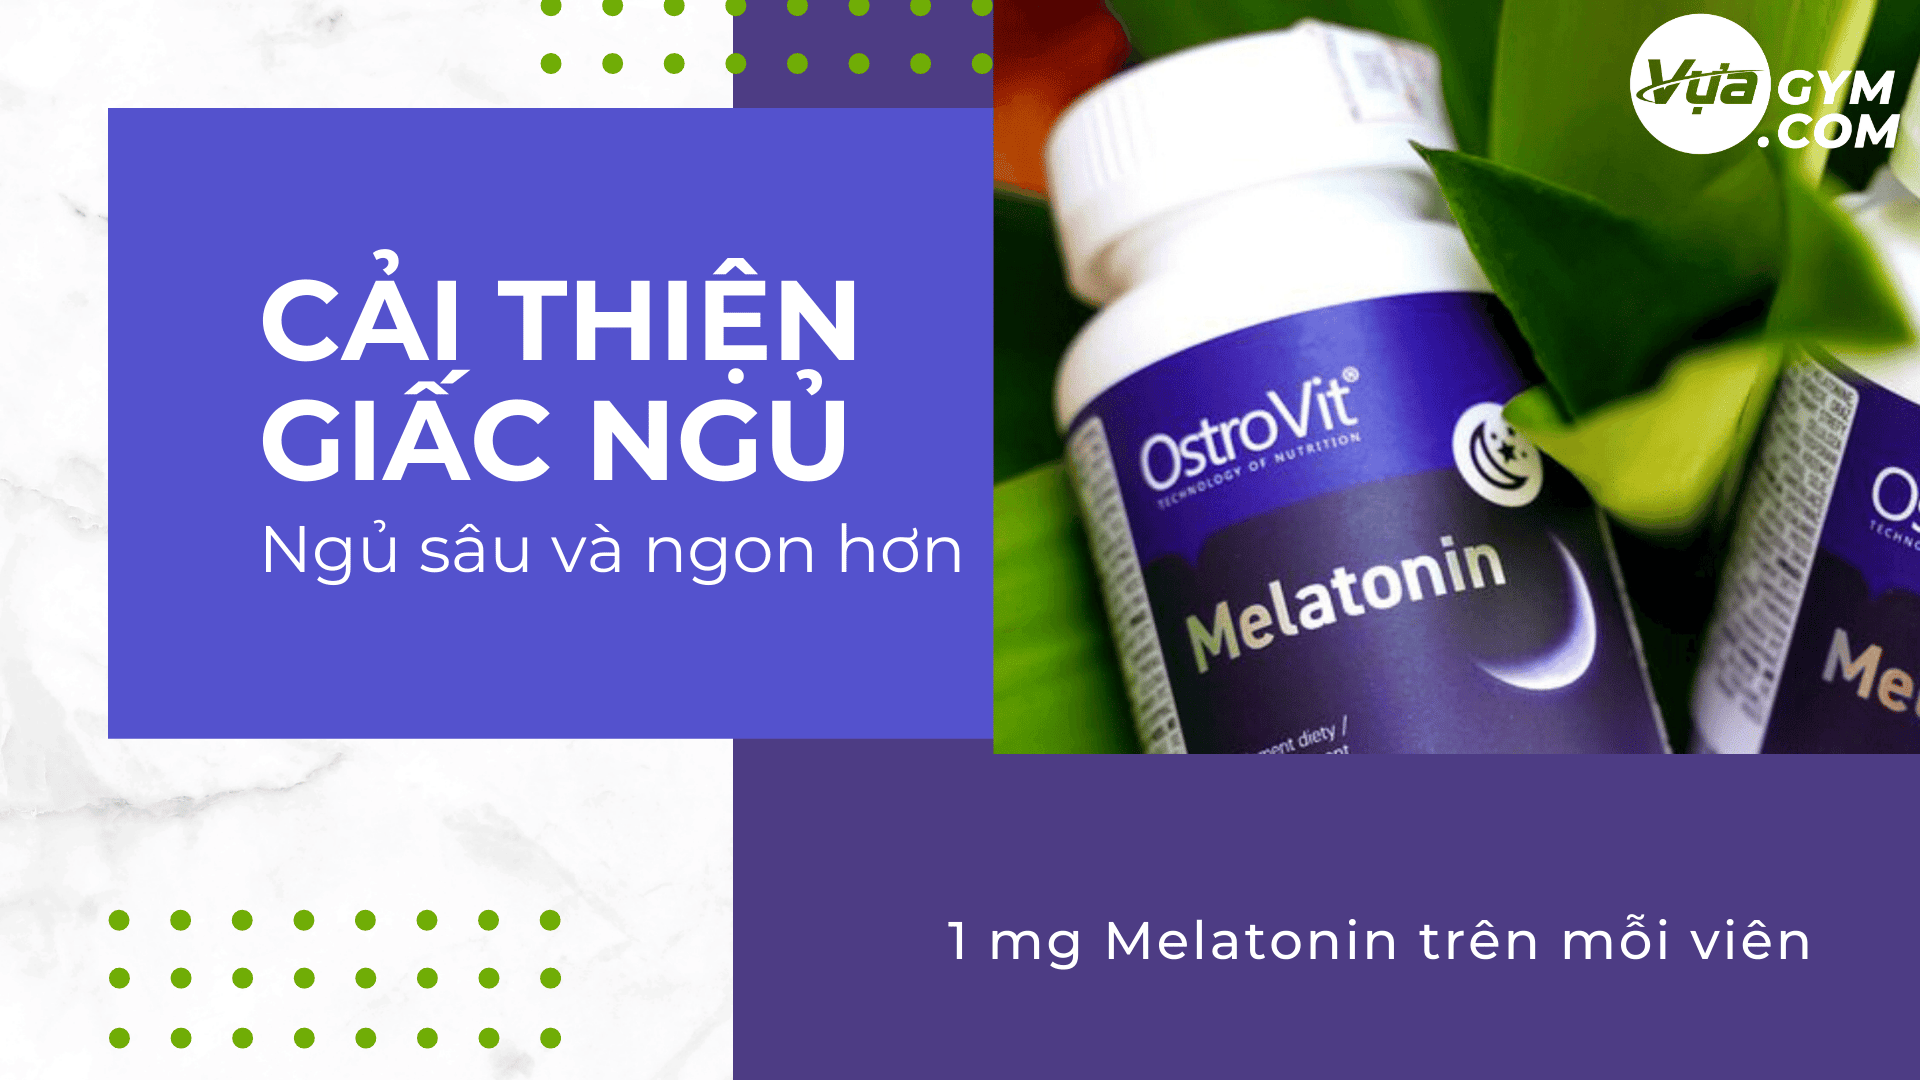 OstroVit - Melatonin 1mg (300 viên) - ostrovit melatonin motavuagym